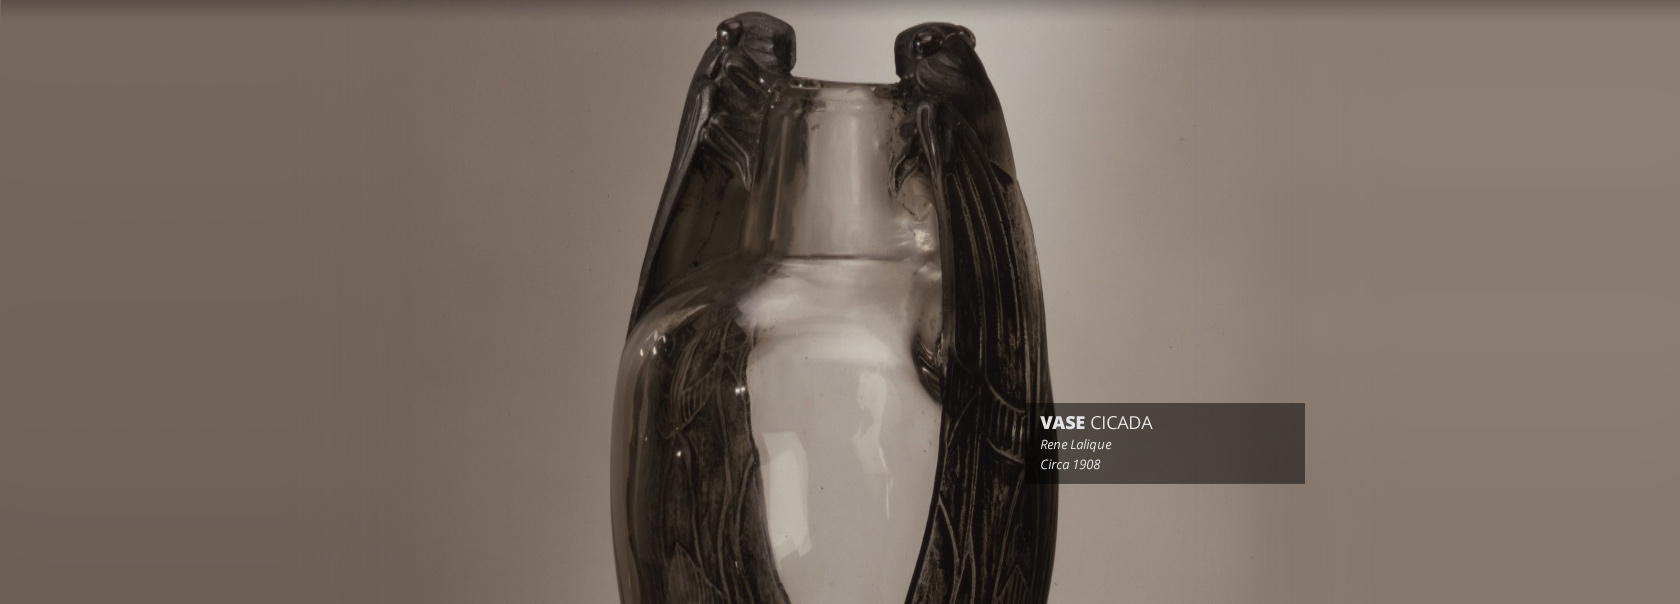 Vase Cicada by Rene Lalique